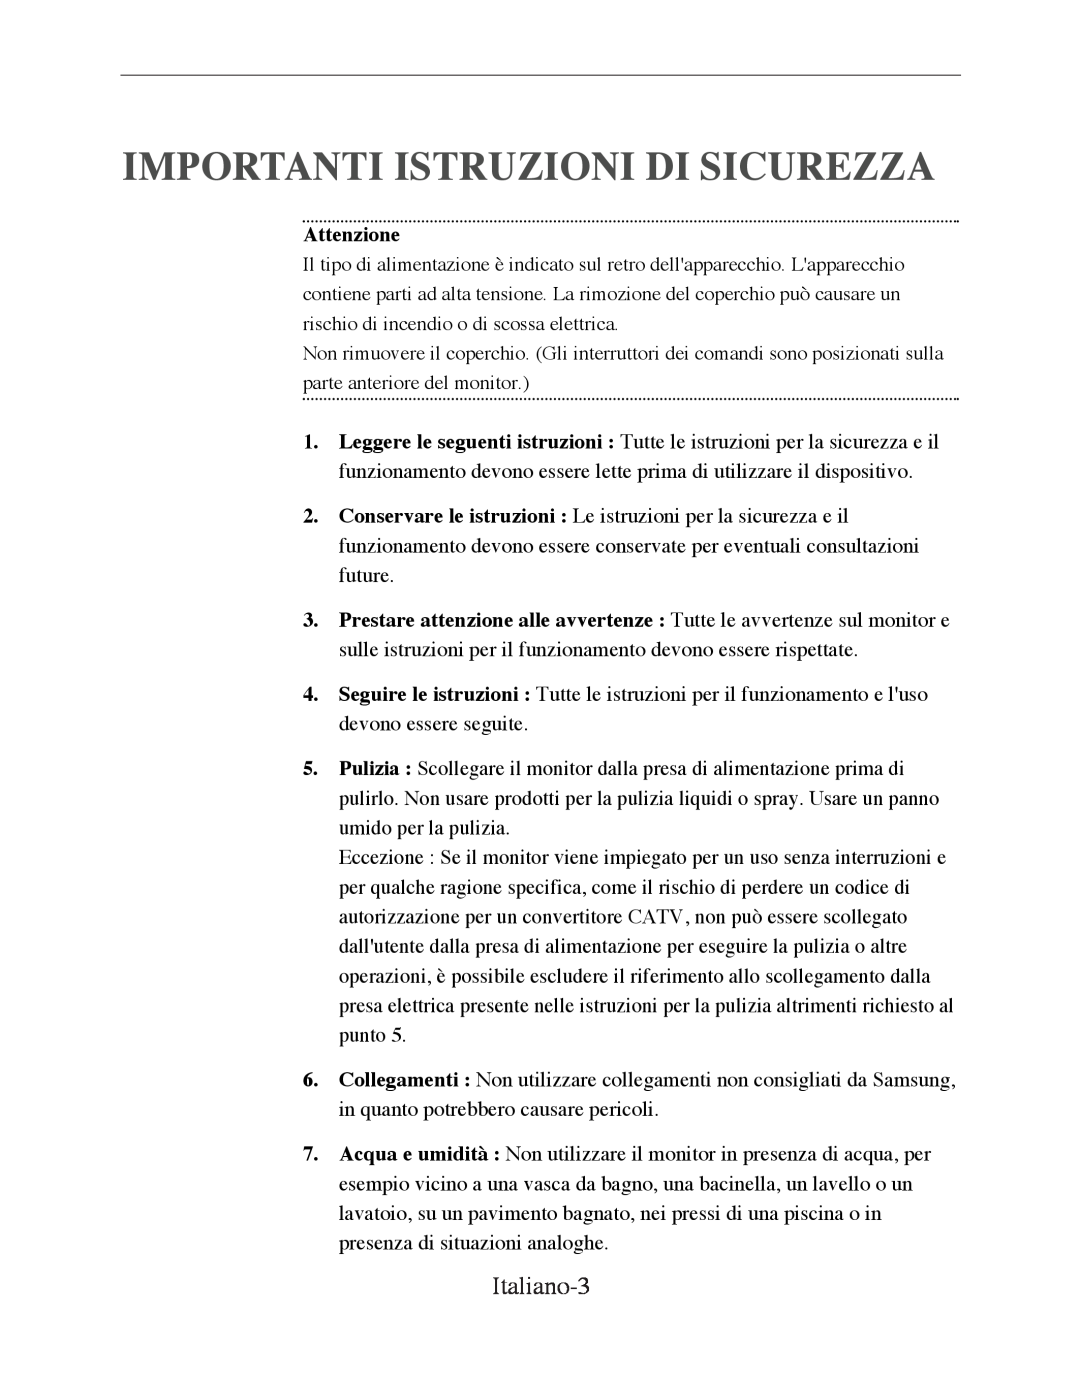 Samsung SMT-170P manual Importanti Istruzioni Di Sicurezza, Italiano-3, Attenzione 